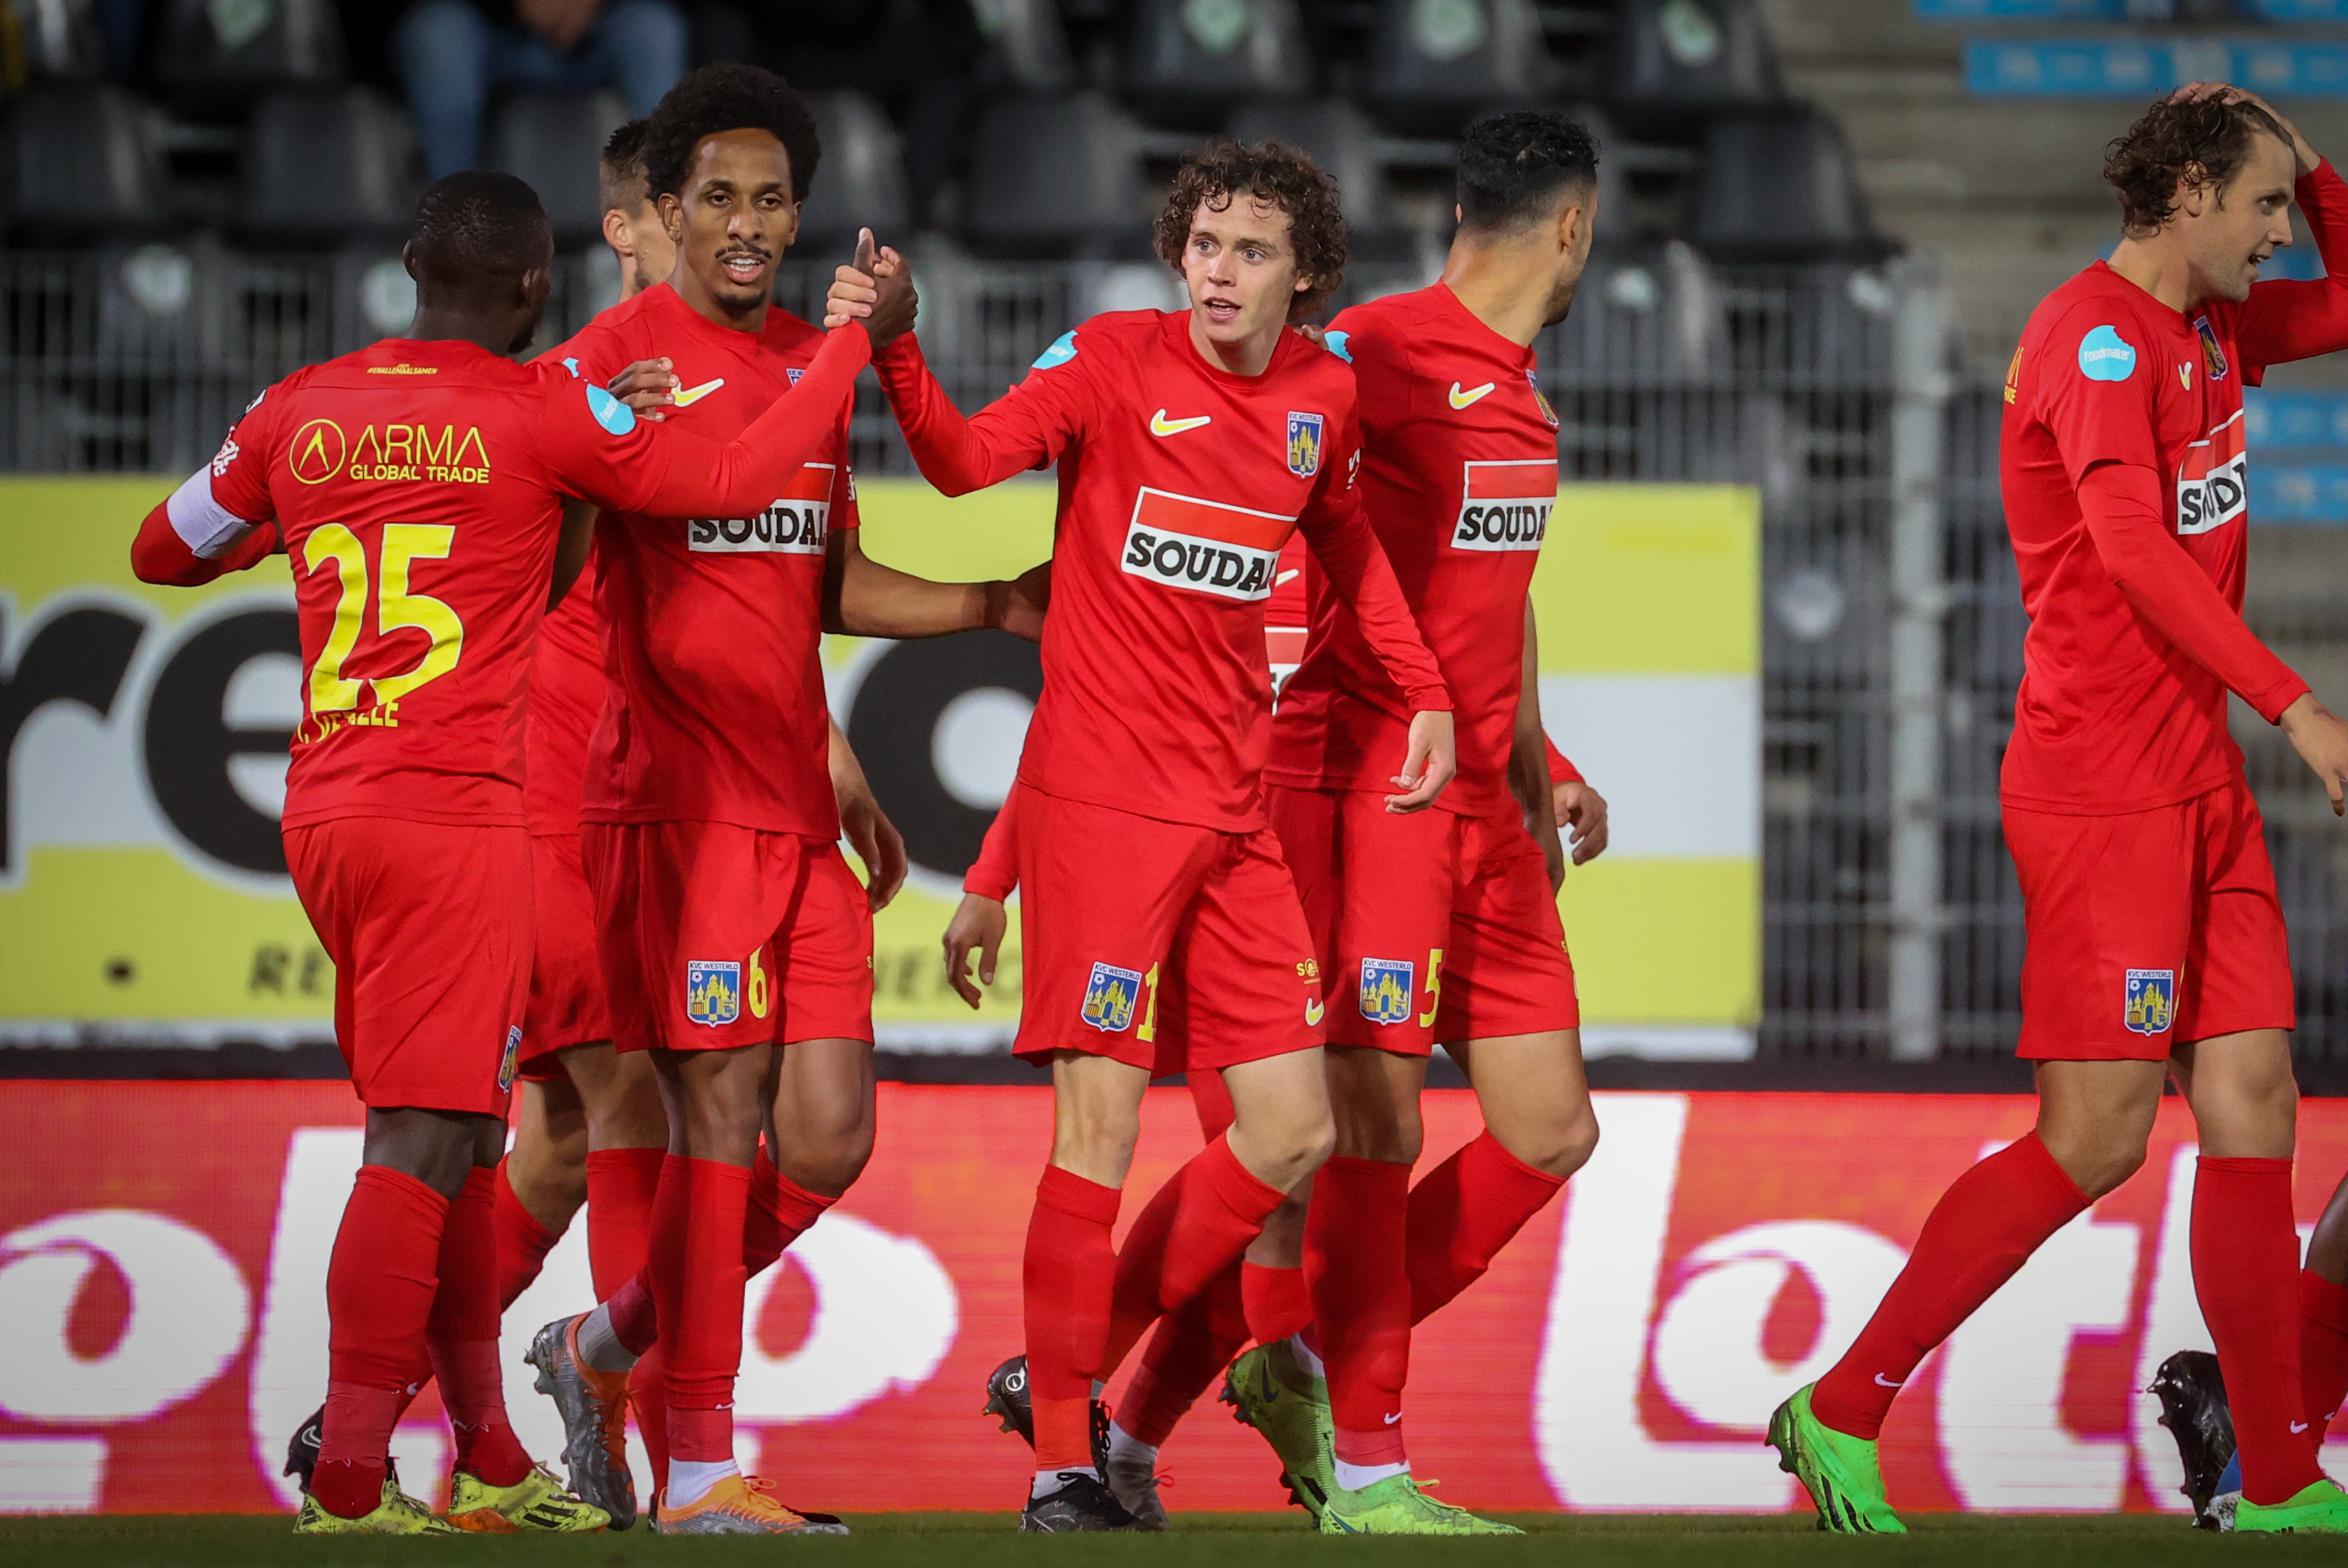 Westerlo registra la prima vittoria dopo i primi gol e la pazza fine a Charleroi